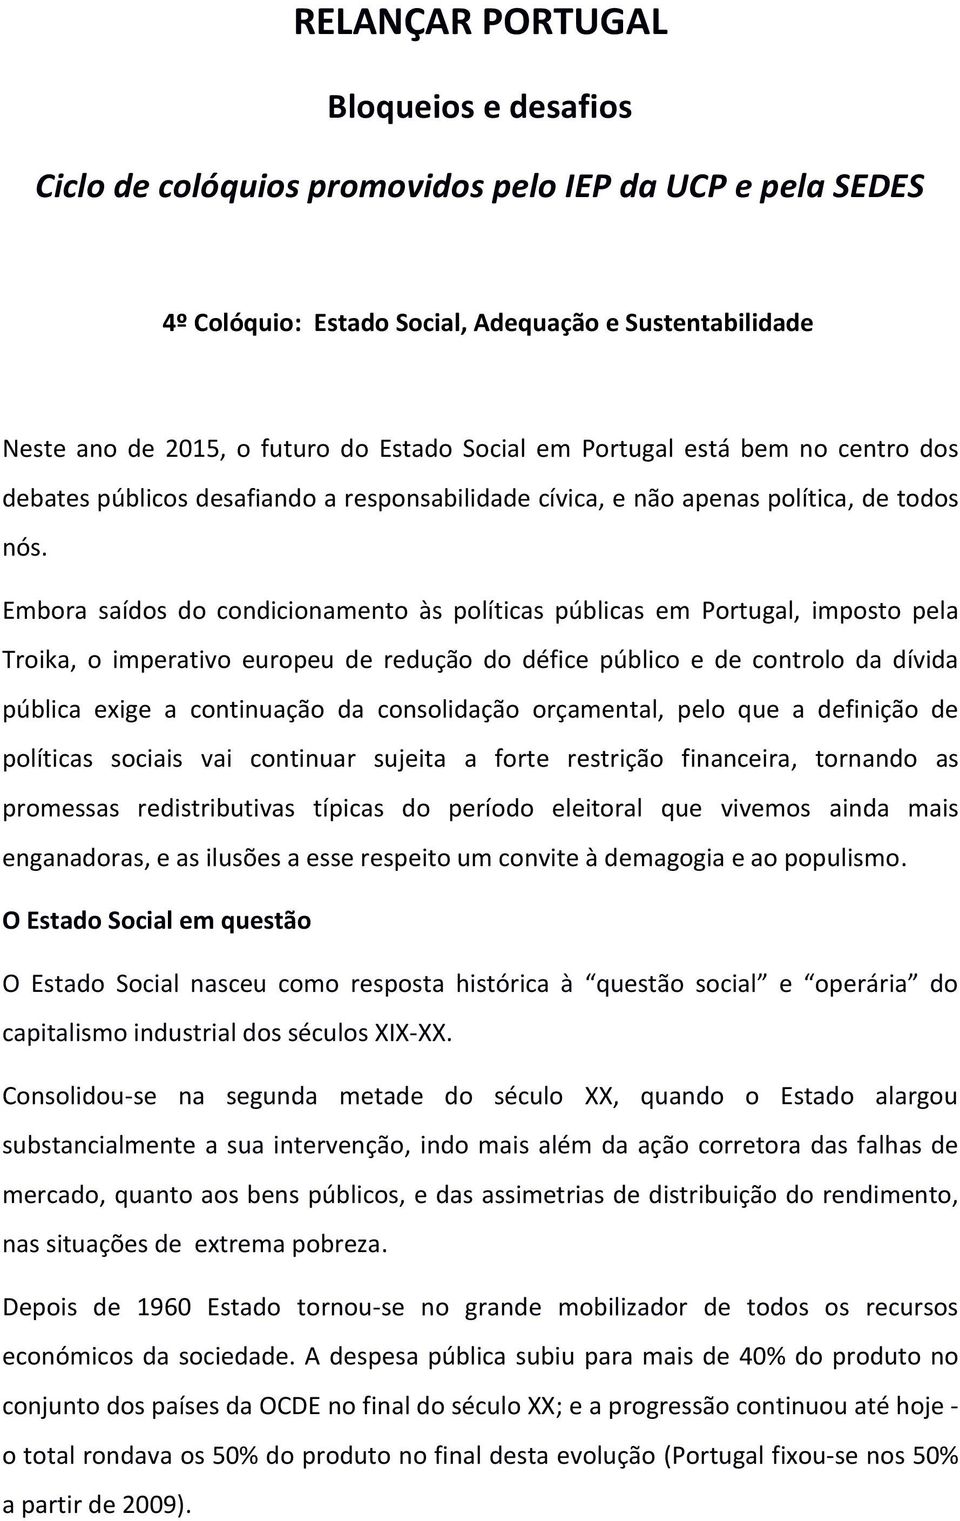 Embora saídos do condicionamento às políticas públicas em Portugal, imposto pela Troika, o imperativo europeu de redução do défice público e de controlo da dívida pública exige a continuação da